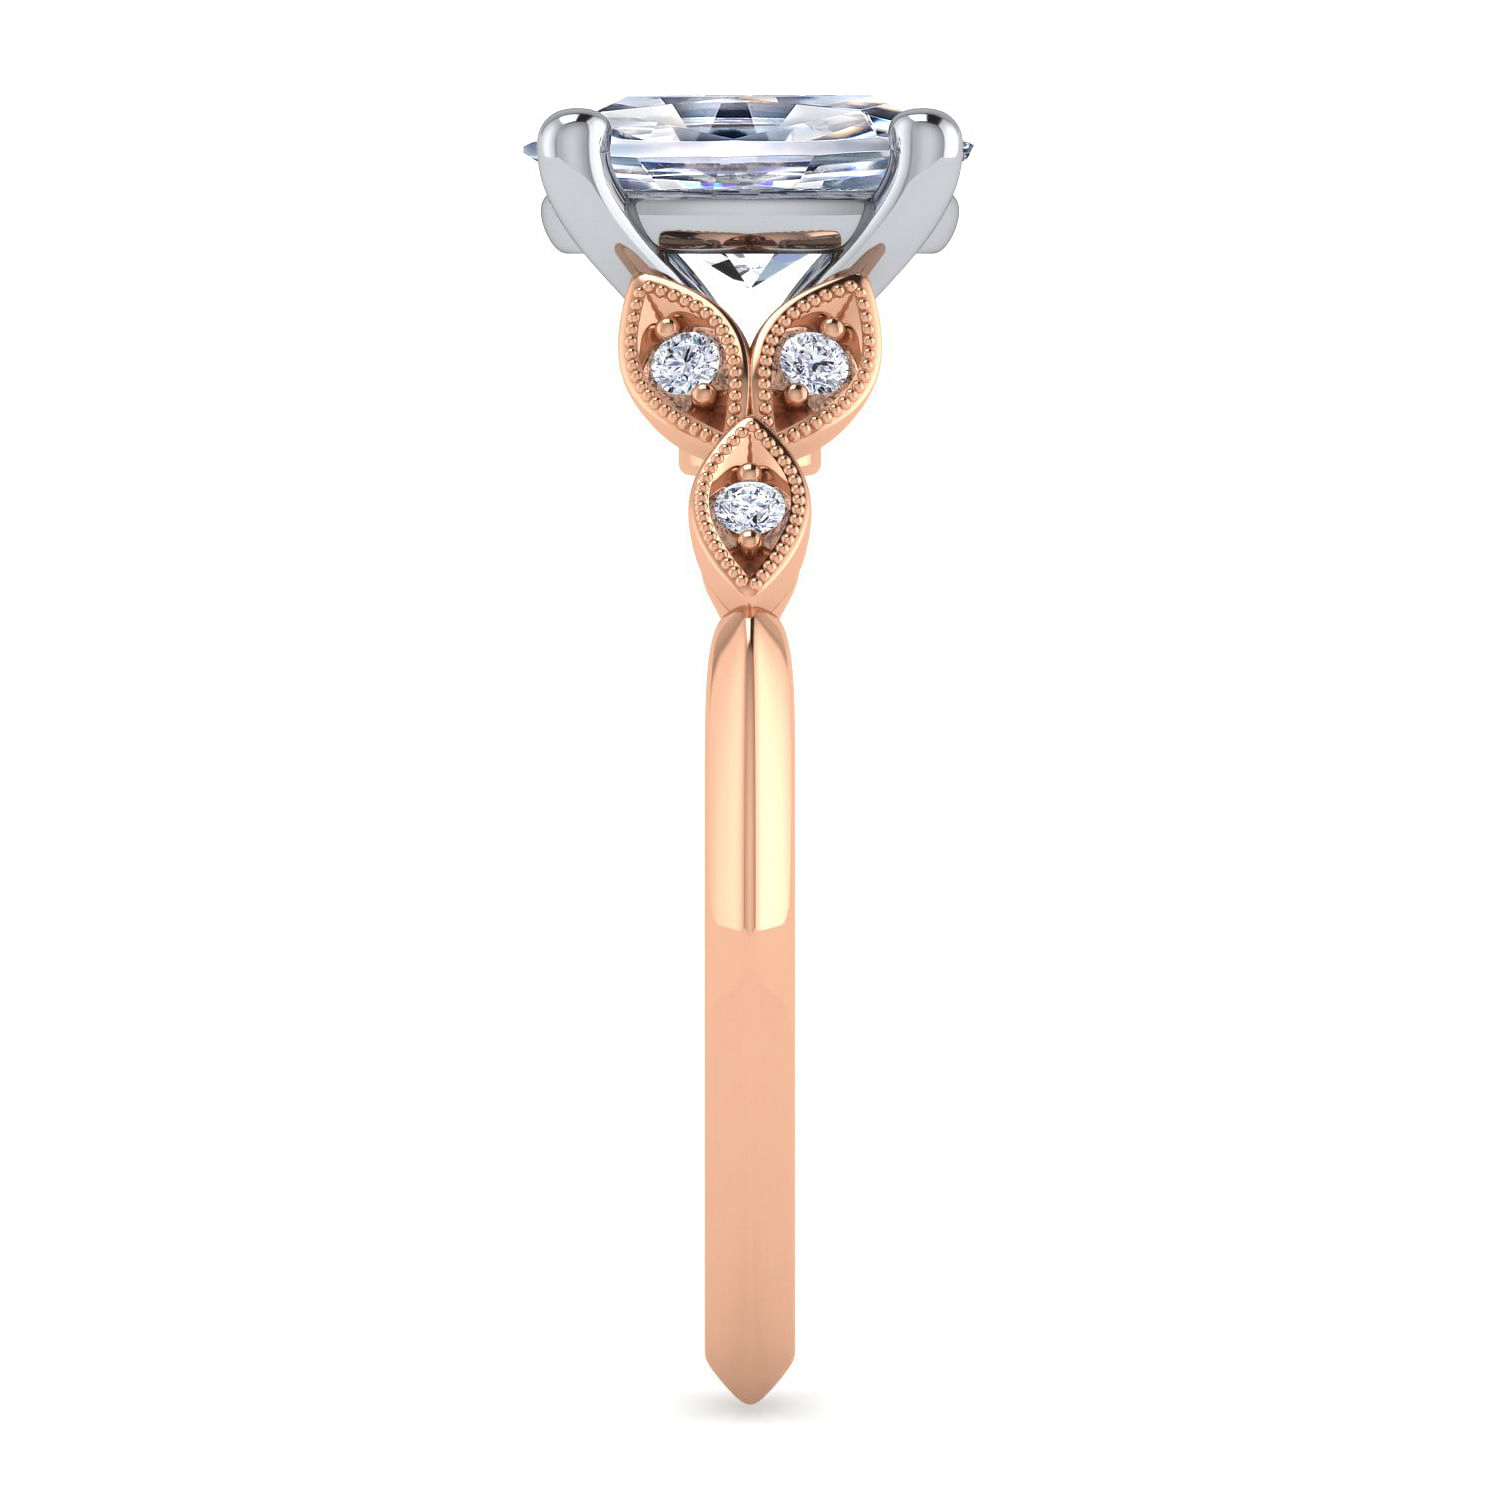 Vintage Inspired 14K White-Rose Gold Split Shank Oval Diamond Engagement Ring